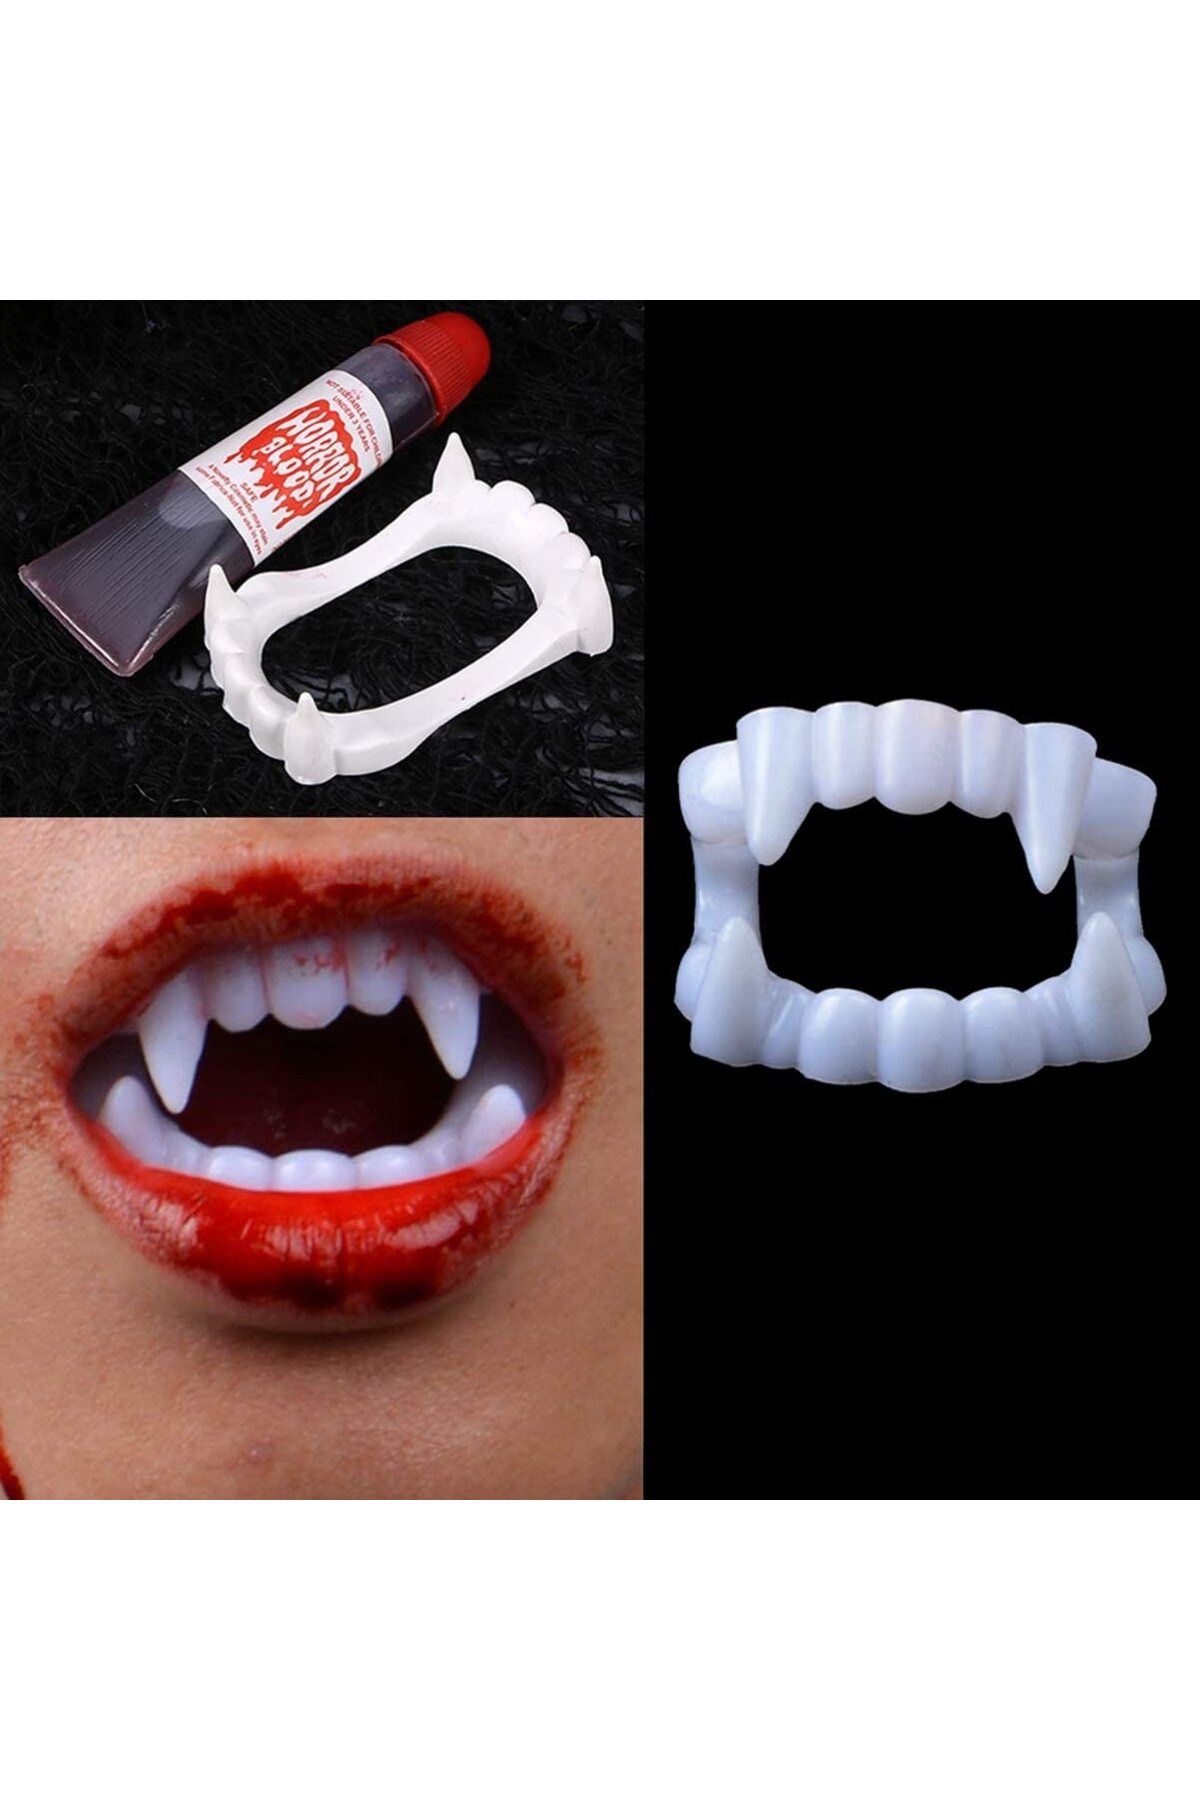 Happyland Beyaz Renk Vampir Dişi Ve Yapay Kan Seti (4202)